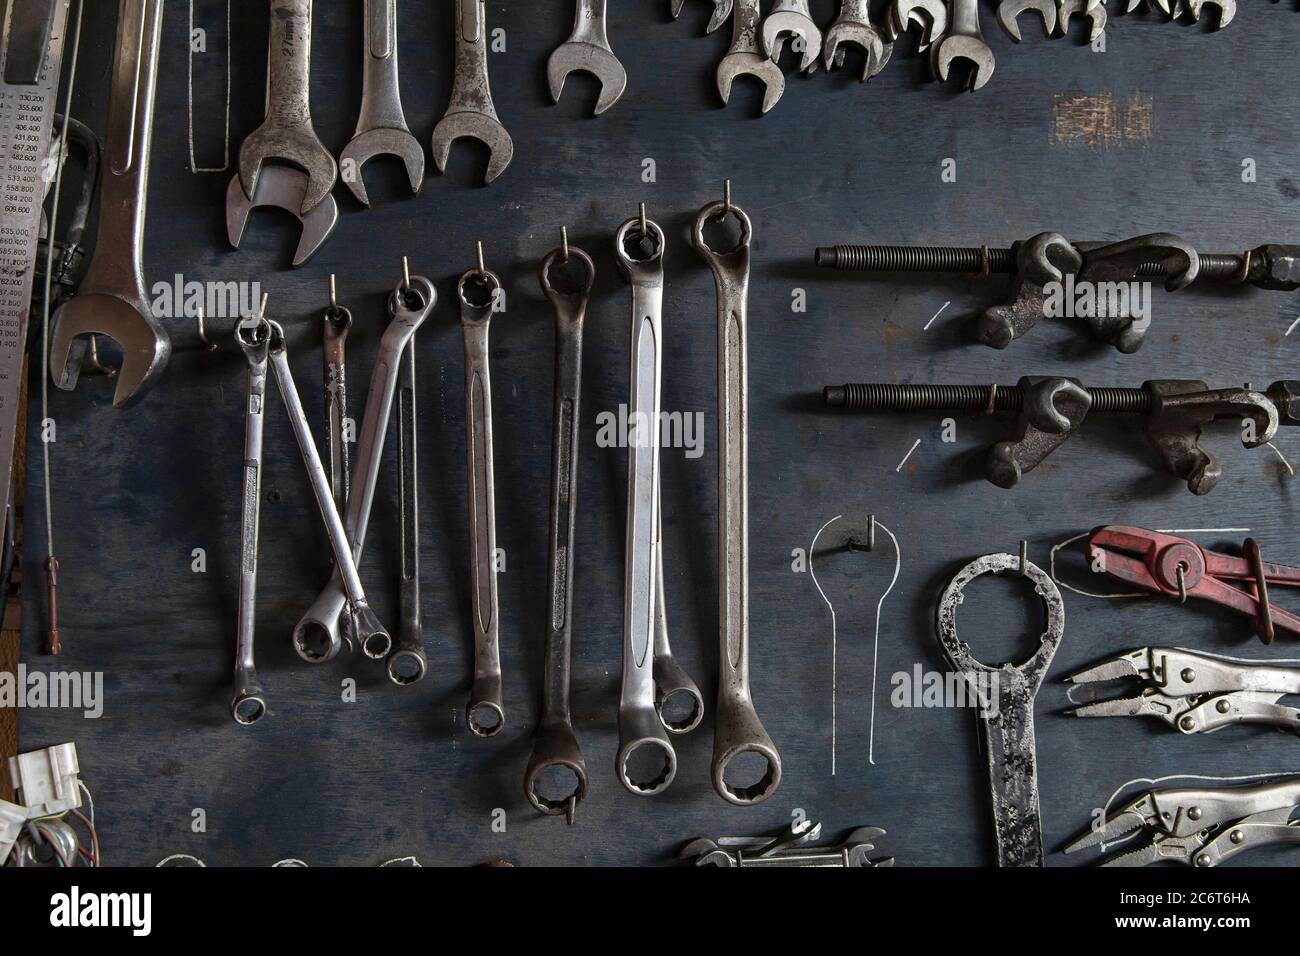 Schraubenschlüssel, Zangen, Klemmen. Viele Werkzeuge Mechaniker auf alten  Holzbrett Hintergrund Stockfotografie - Alamy